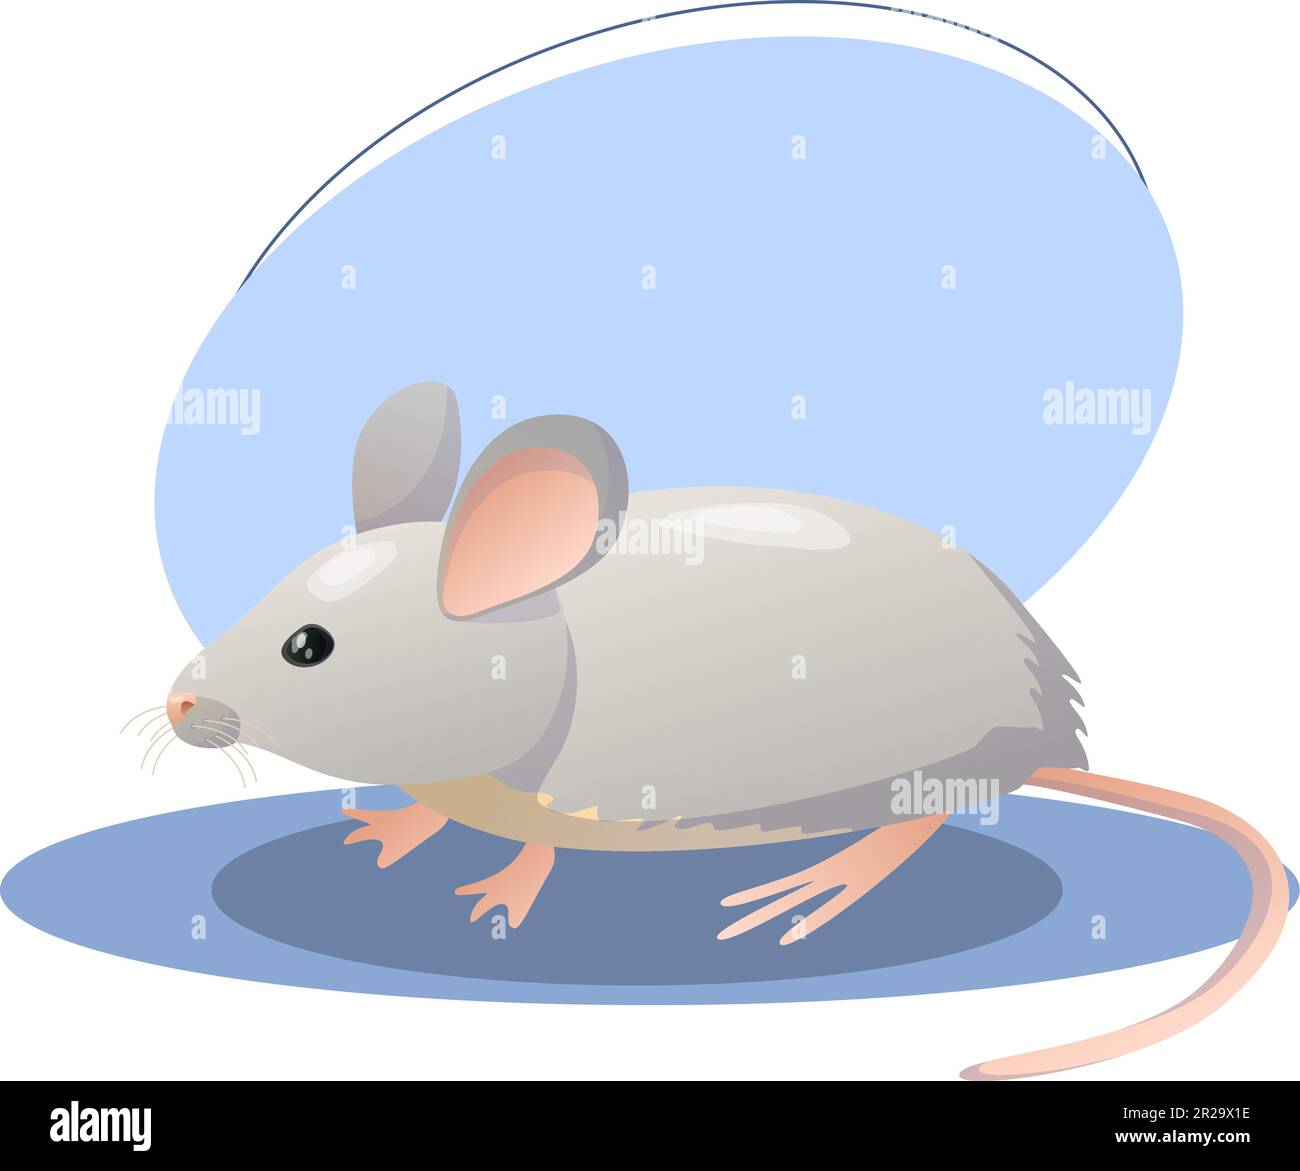 Illustration de la souris. Animal, oreilles, queue, nez. Conception graphique vectorielle modifiable. Illustration de Vecteur